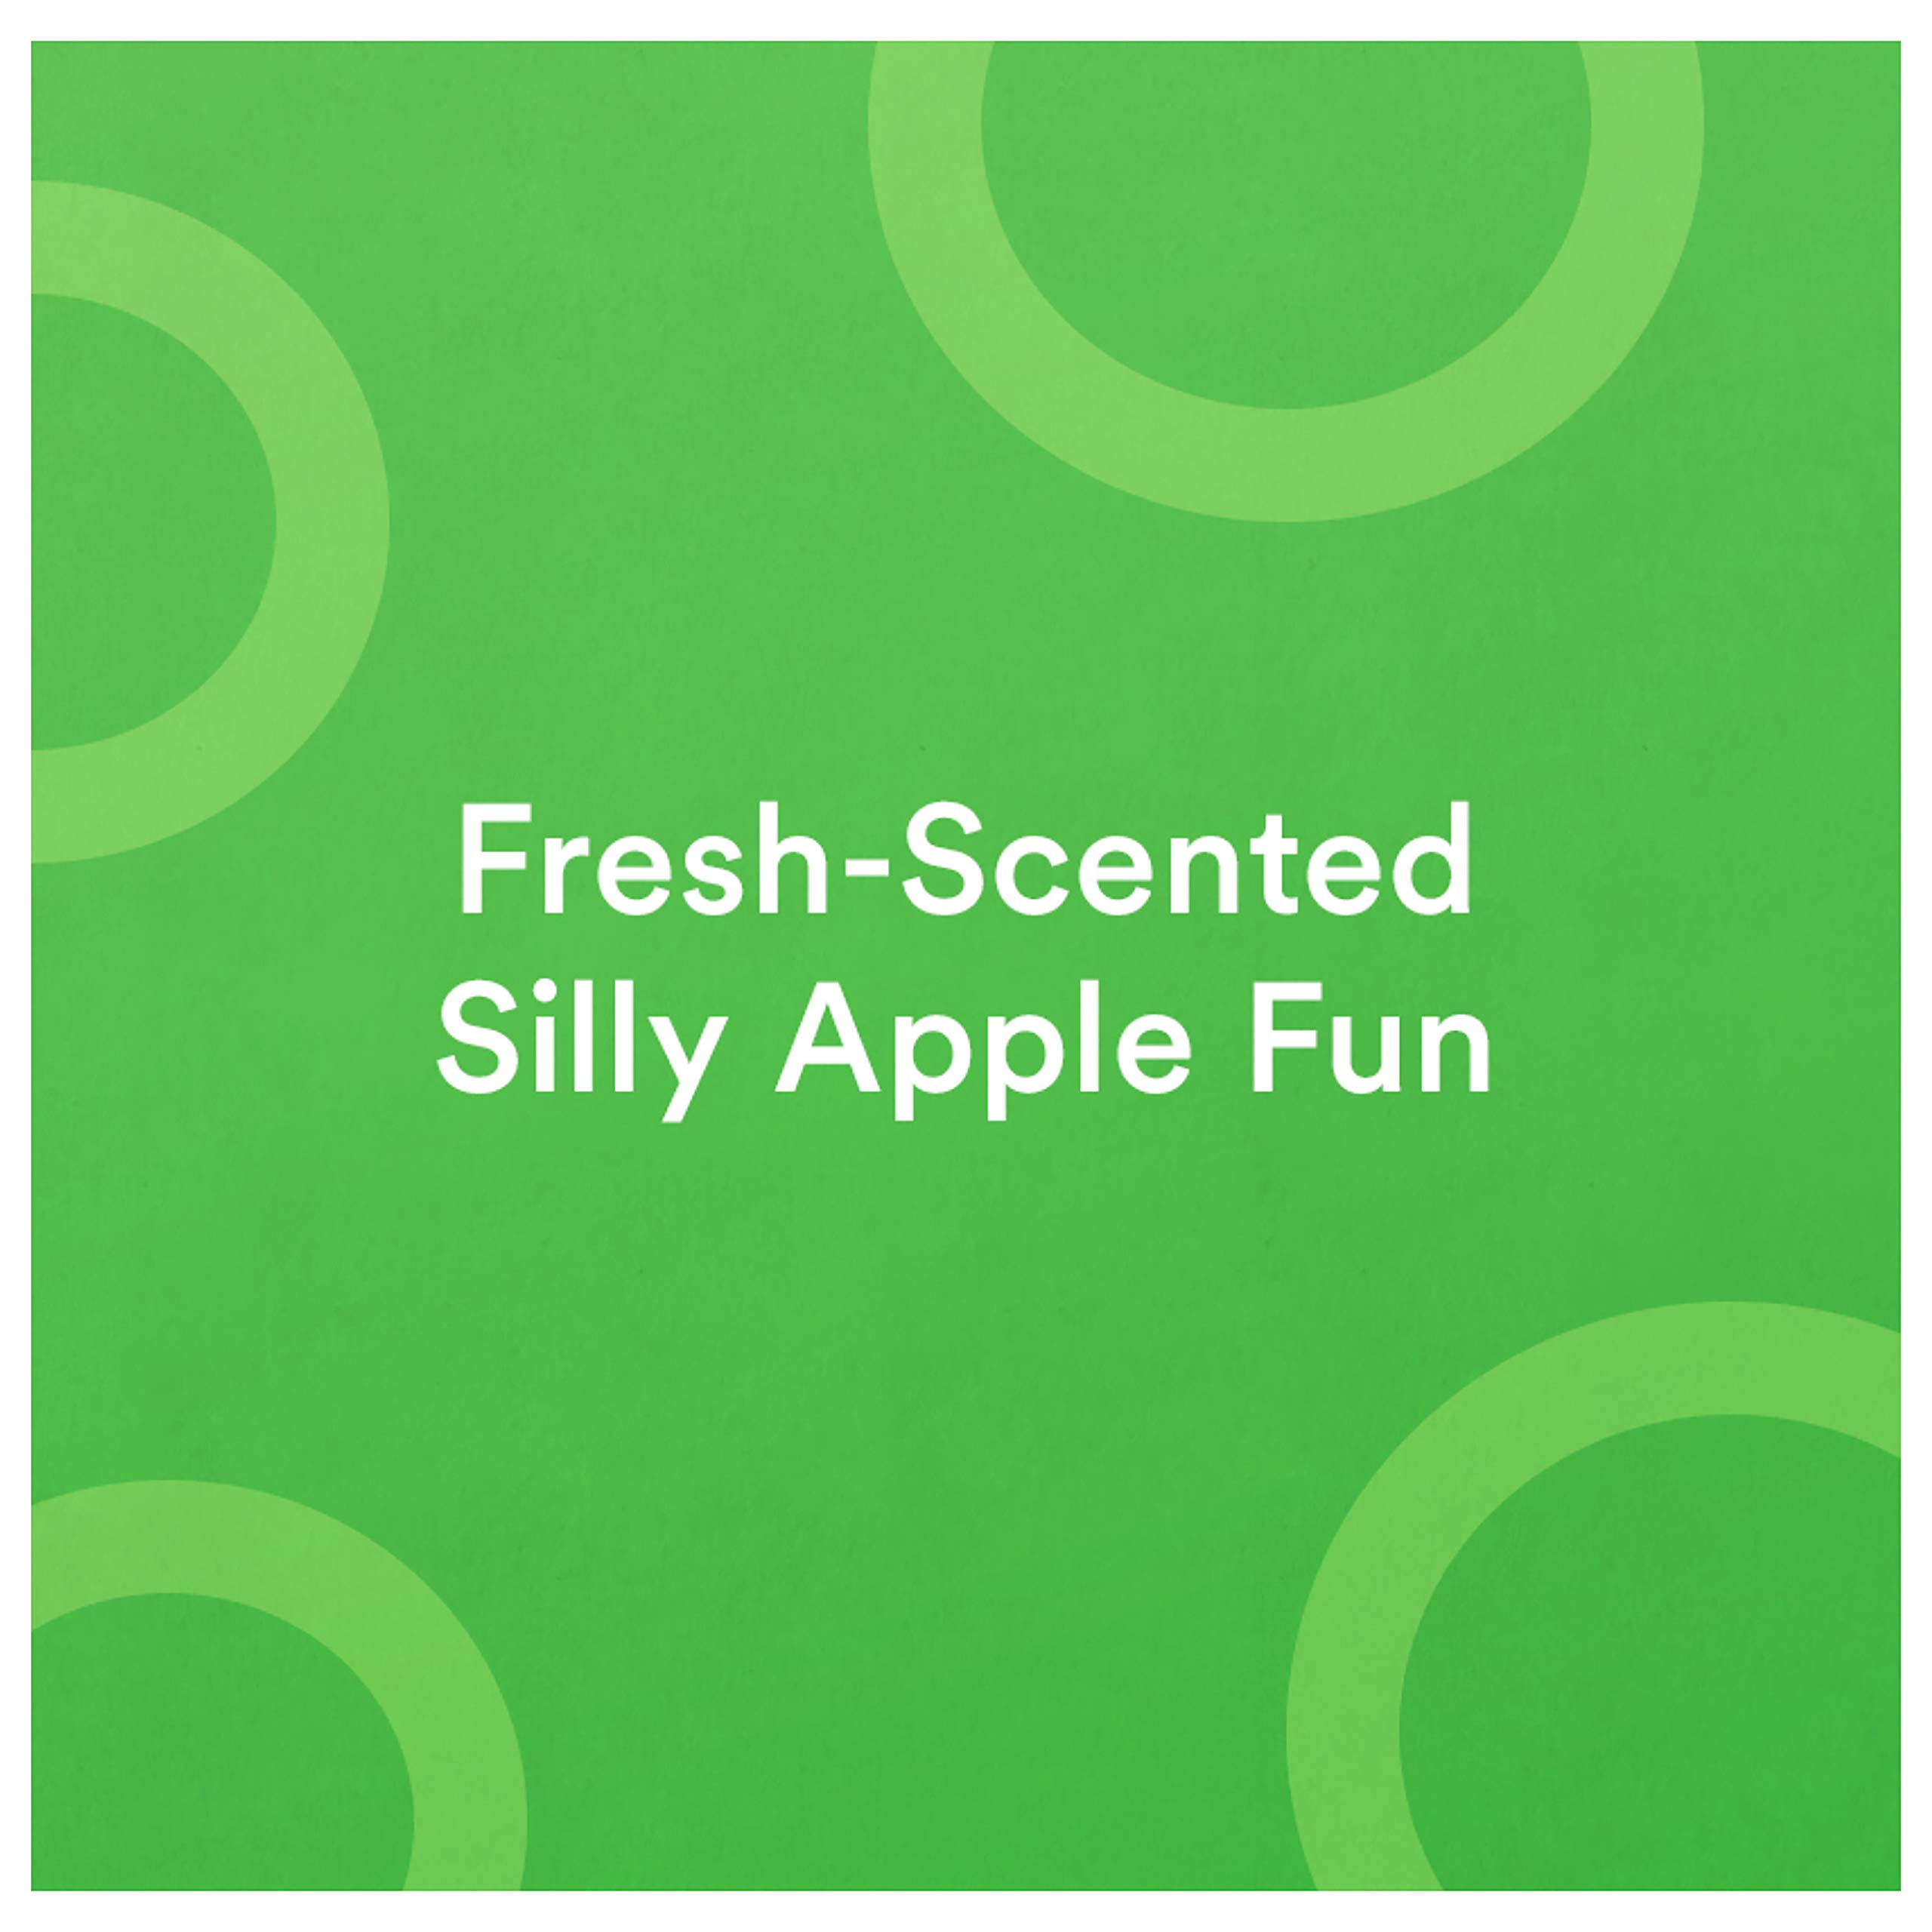 Suave Kids Detangler Spray For Tear-Free Styling Silly Apple Dermatologist-Tested Hair Detangler Formula, 10 Fl Oz (Pack of 6)